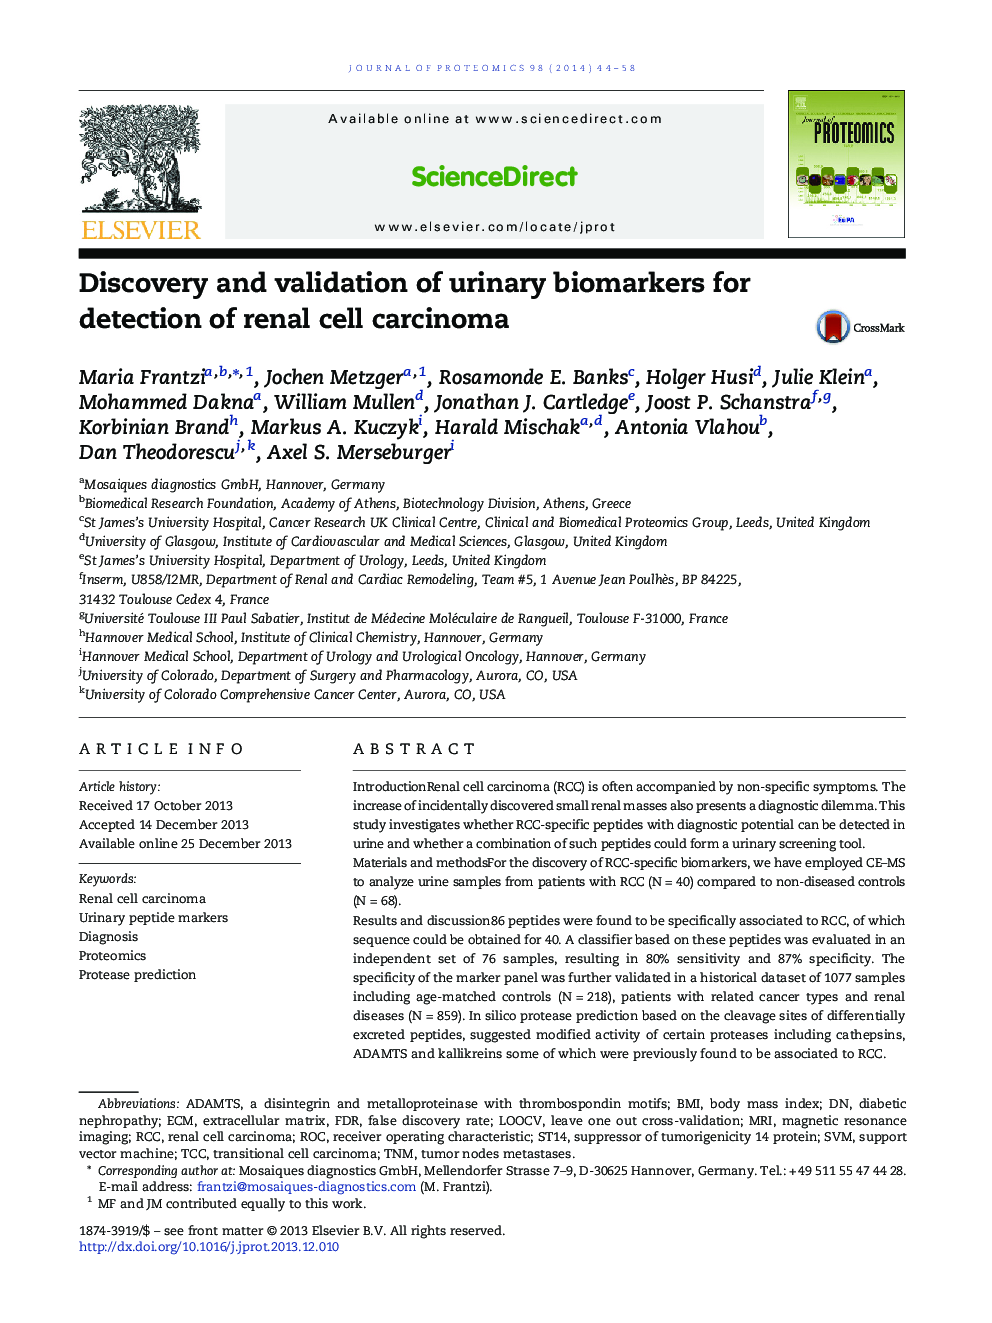 کشف و تایید بیومارکرهای ادراری برای تشخیص کارسینوم سلولی کلیه 